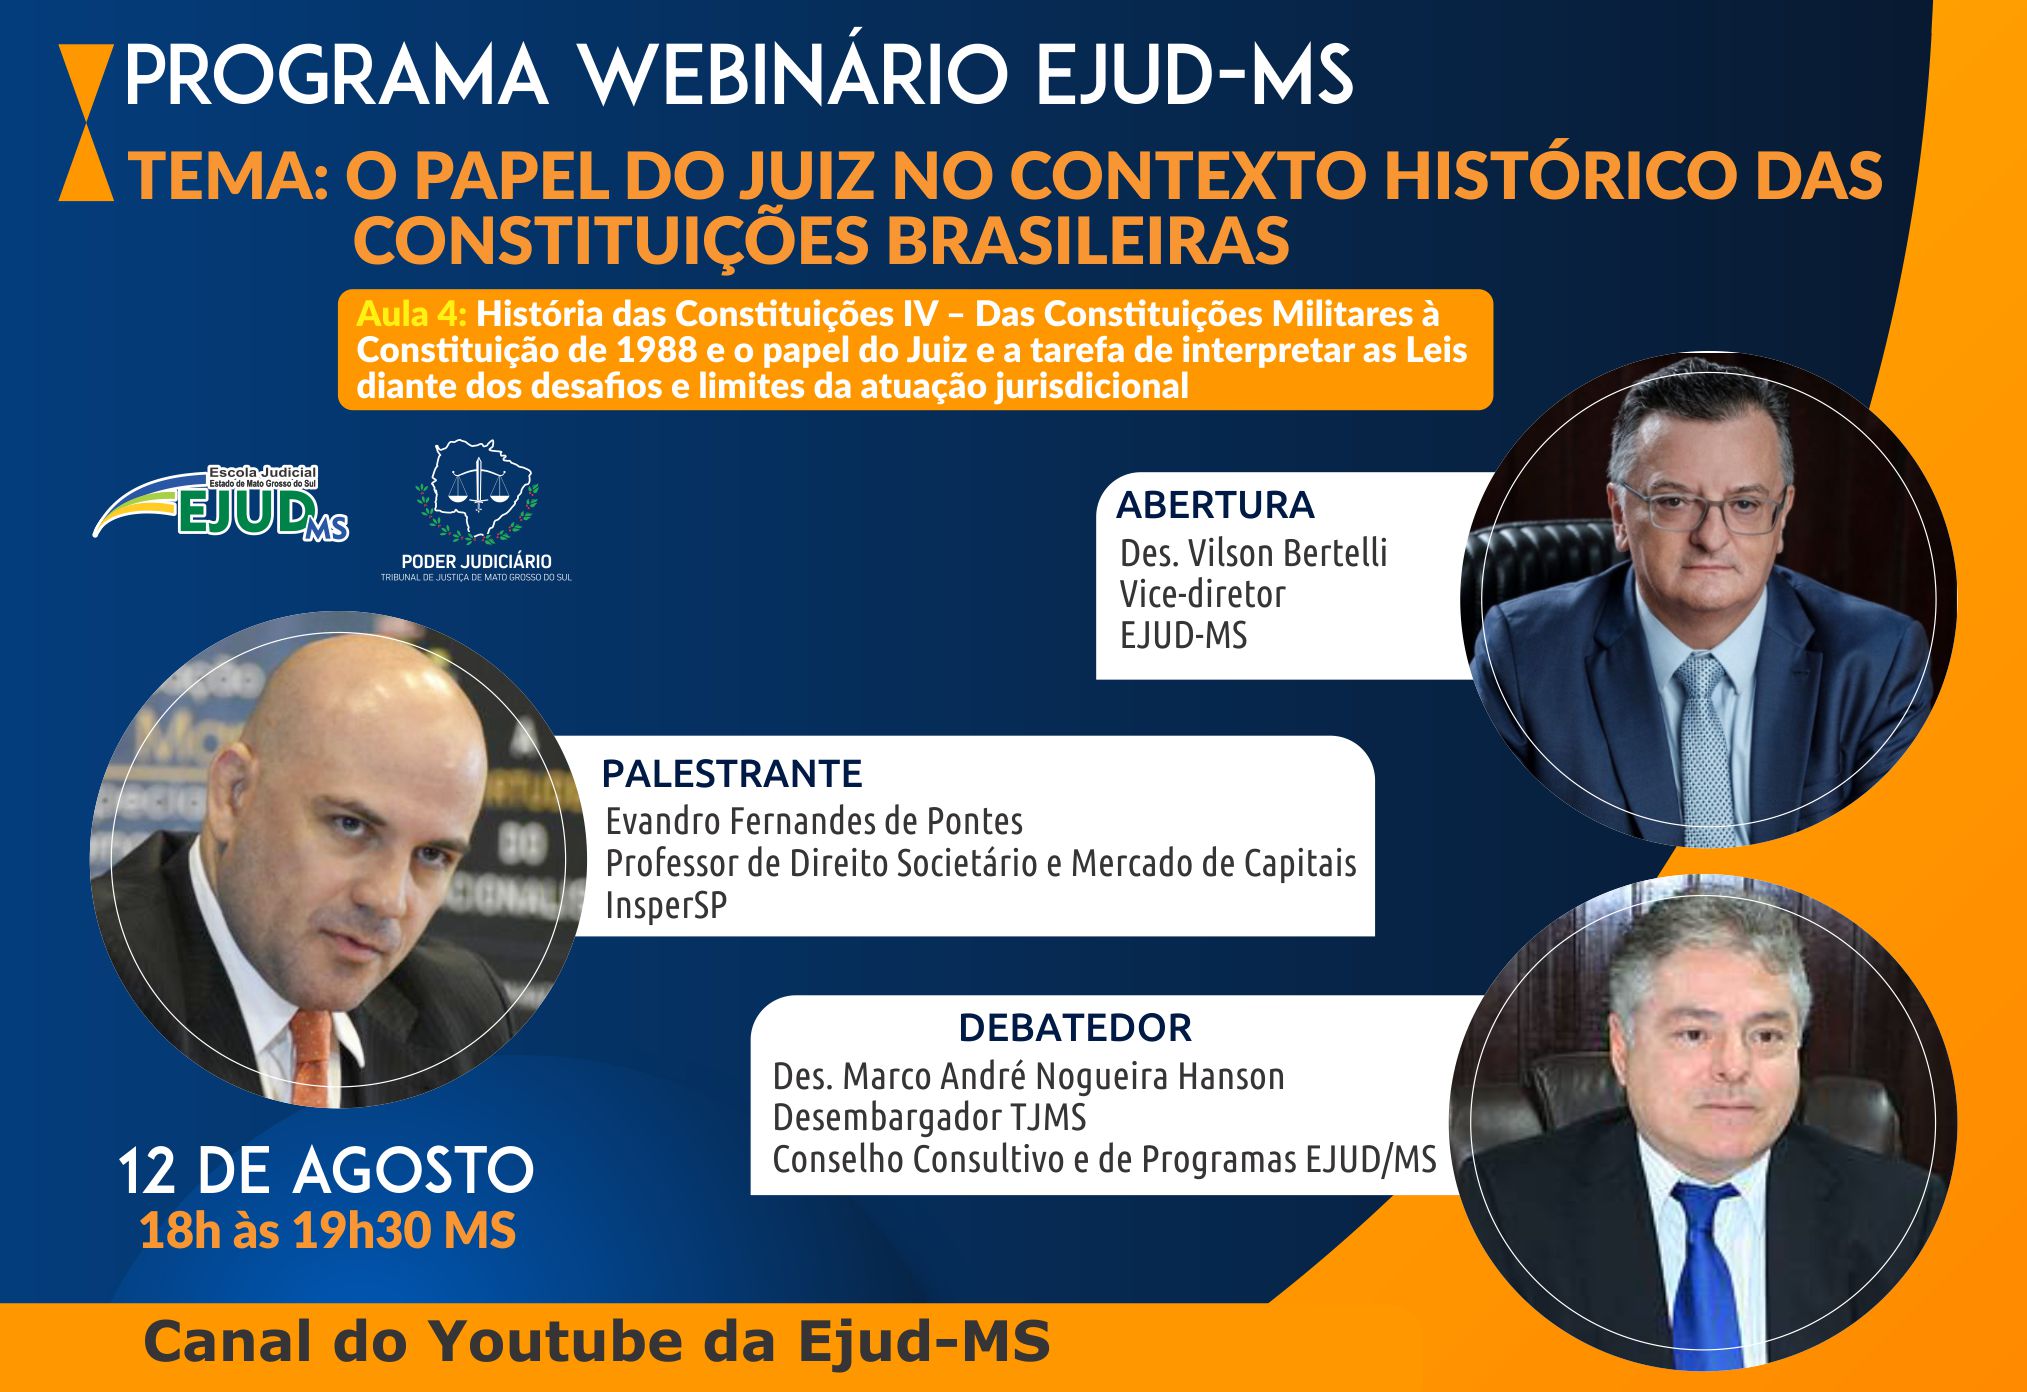 É hoje! Participe do Programa Webinário Ejud-MS: “O Papel do Juiz no contexto histórico das constituições brasileiras – Aula 4: História das Constituições IV”